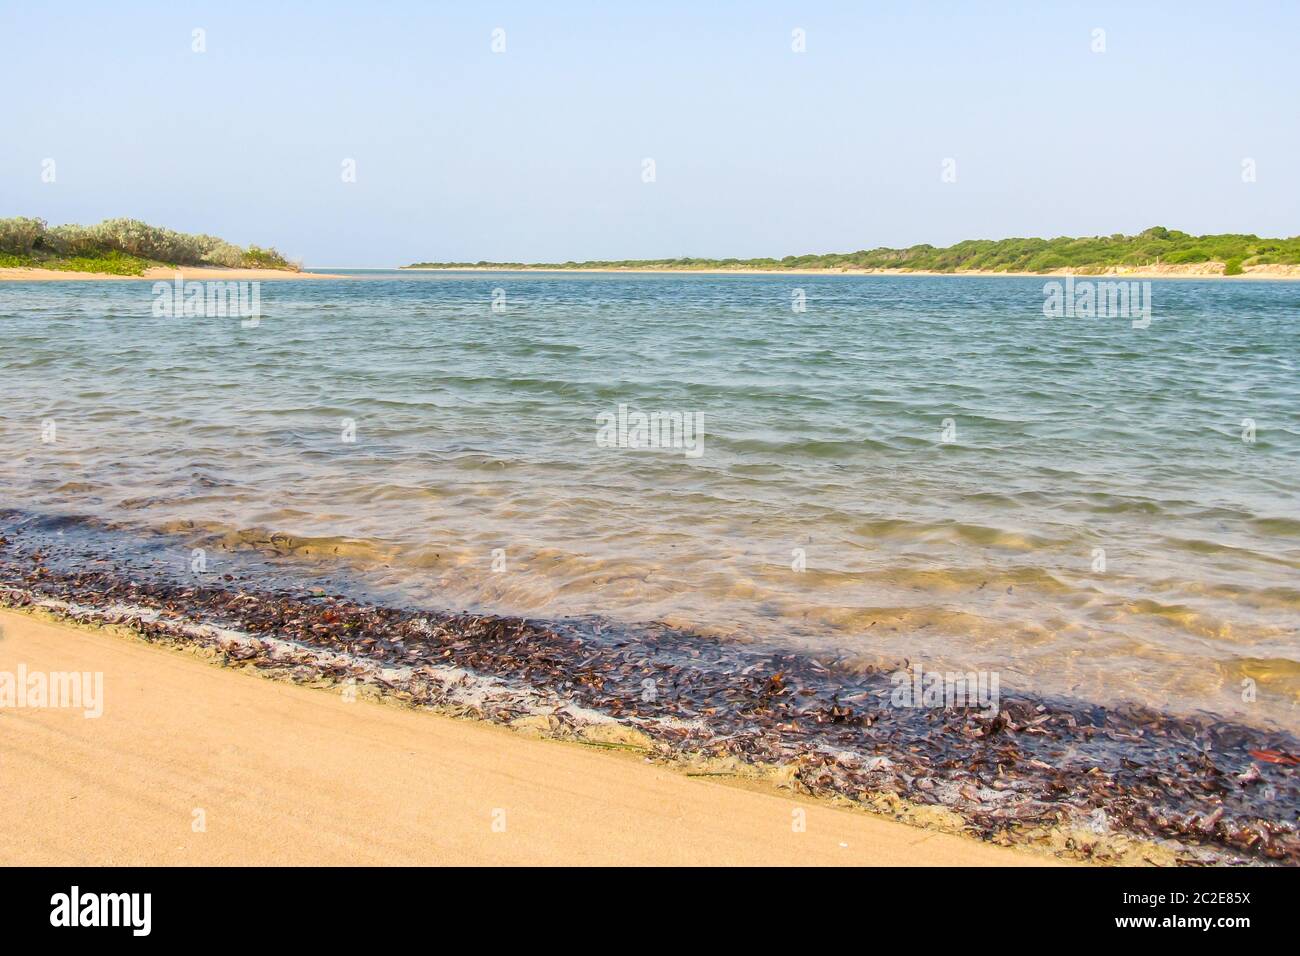 Eine türkisfarbene geschützte Bucht auf der portugiesischen Insel, Teil der KaNyaka Barrier Island Systems im Süden Mosambiks, an einem sonnigen Tag mit einem Stockfoto